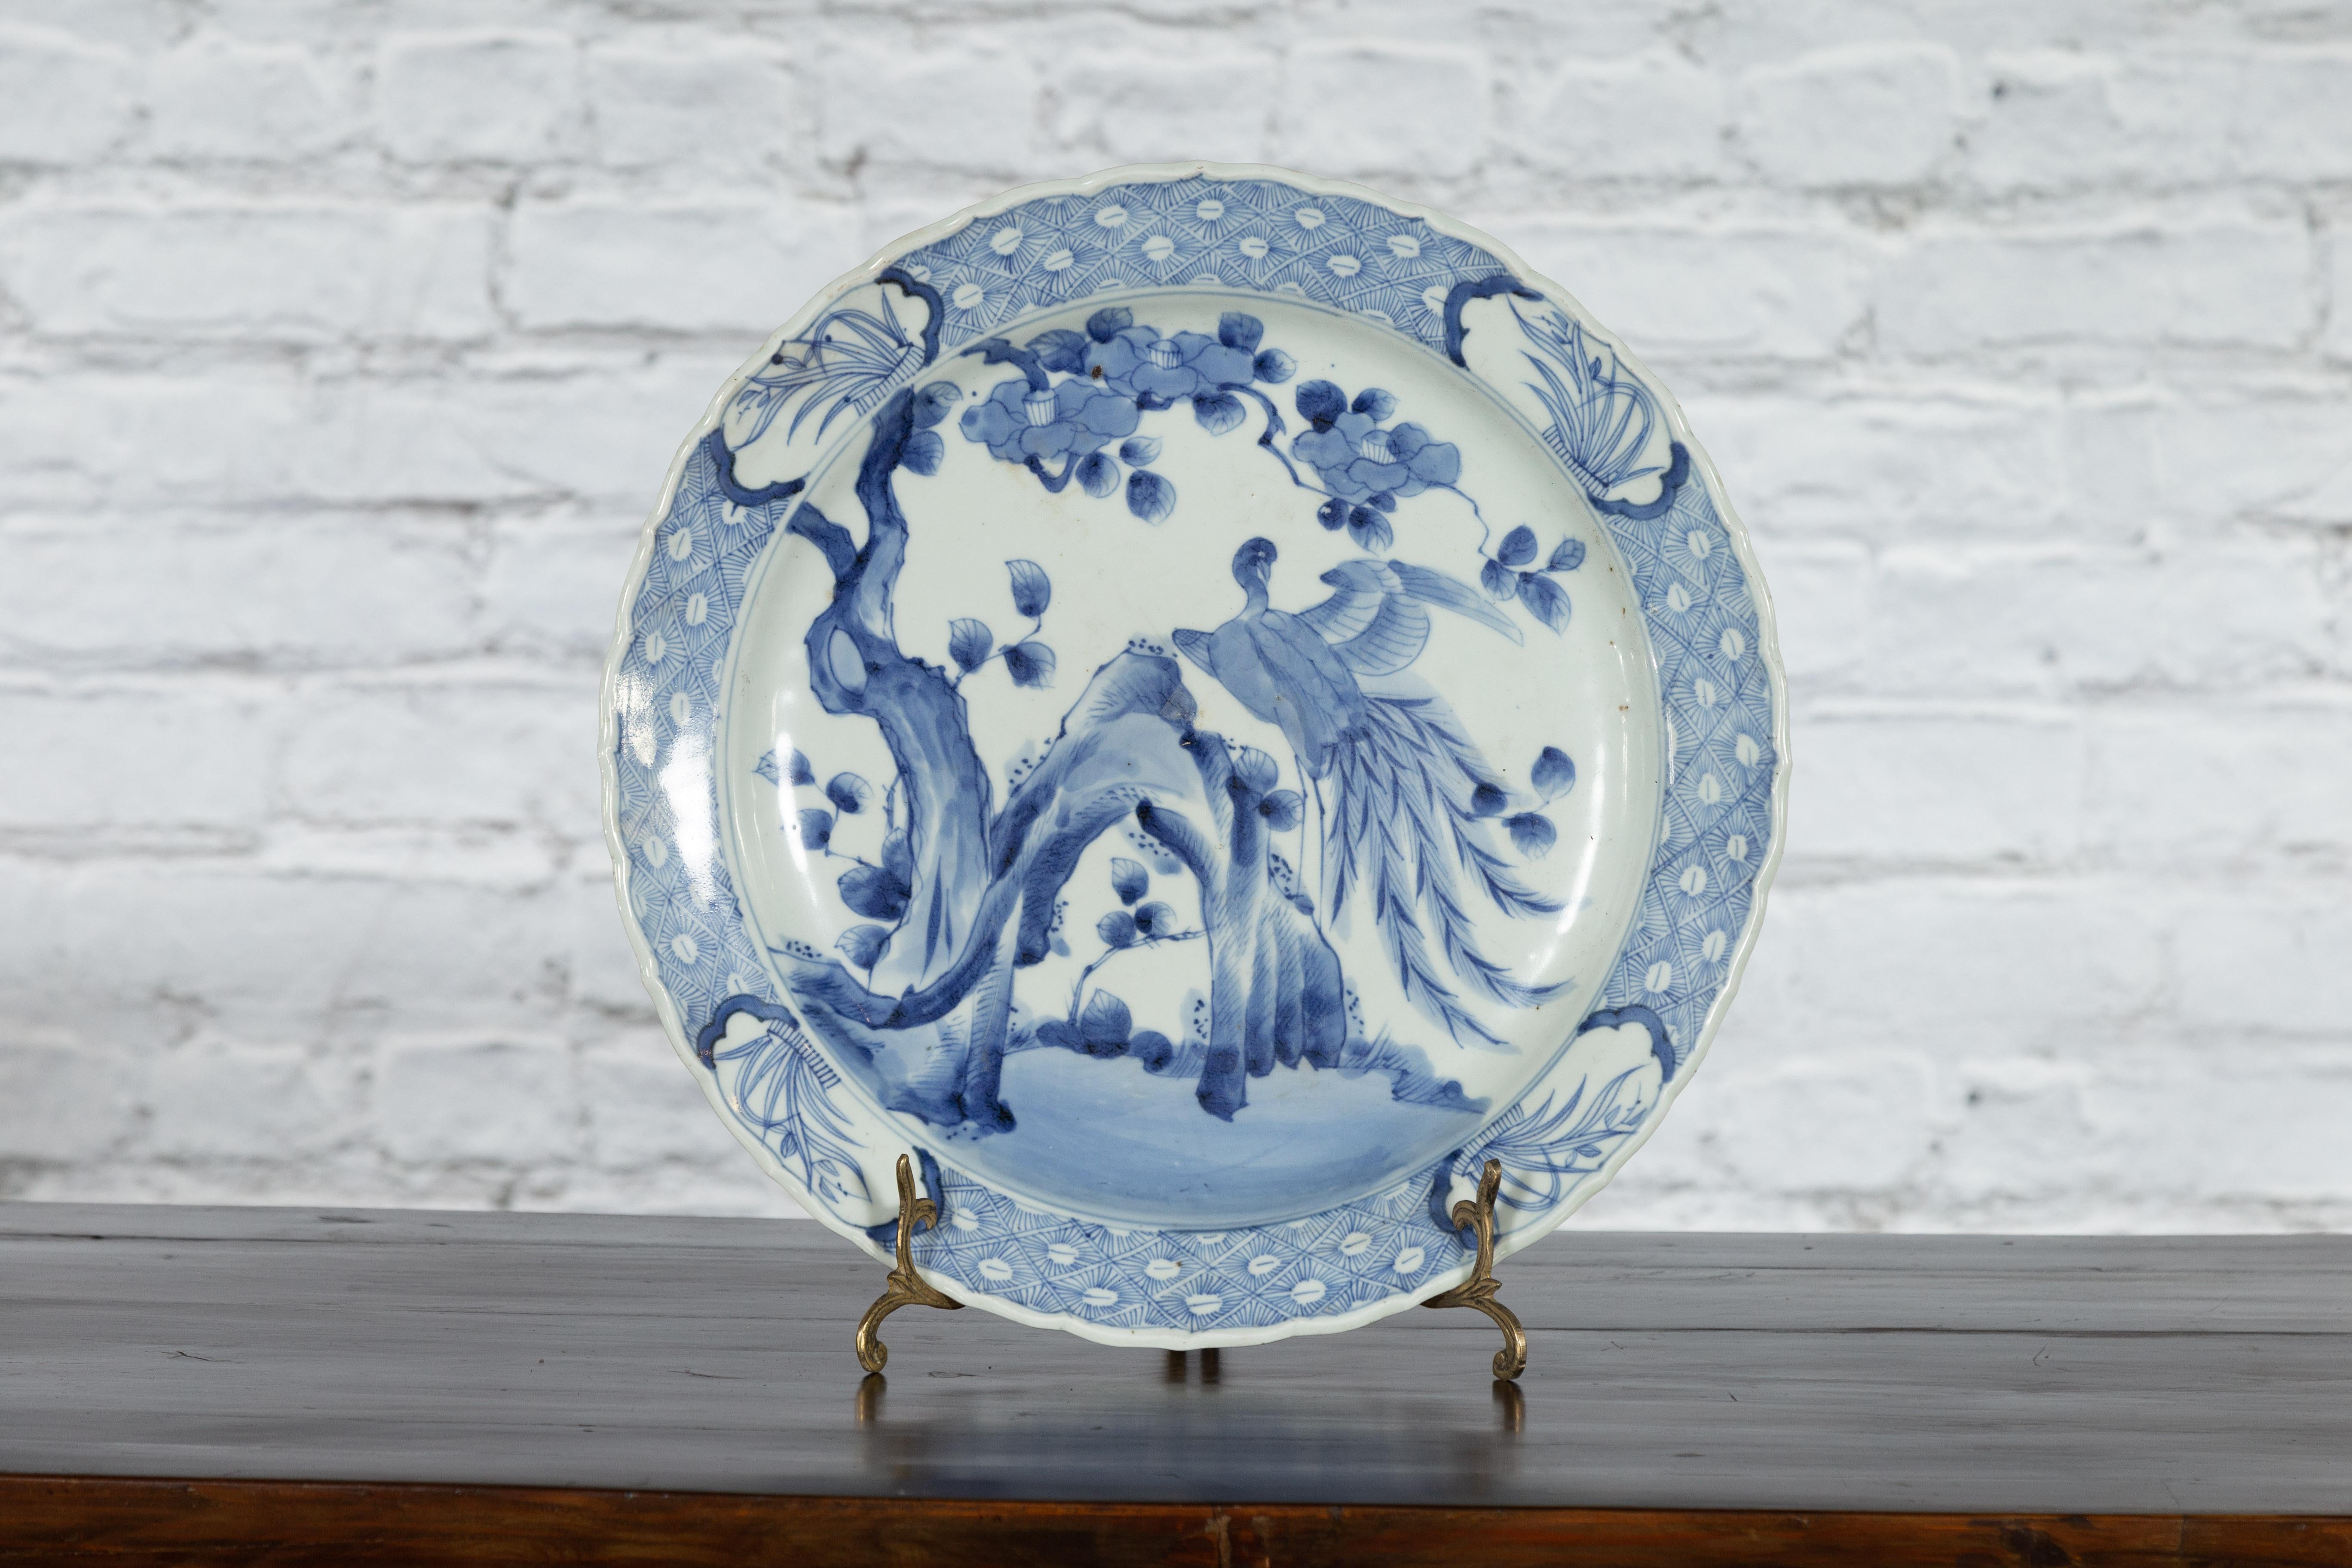 Ein japanischer Porzellanteller aus dem 19. Jahrhundert mit handgemaltem blau-weißem Baum-, Fels- und Vogeldekor. Dieser Porzellanteller, der im 19. Jahrhundert in Japan hergestellt wurde, zeigt ein zartes blau-weißes Dekor, das ein kunstvolles,